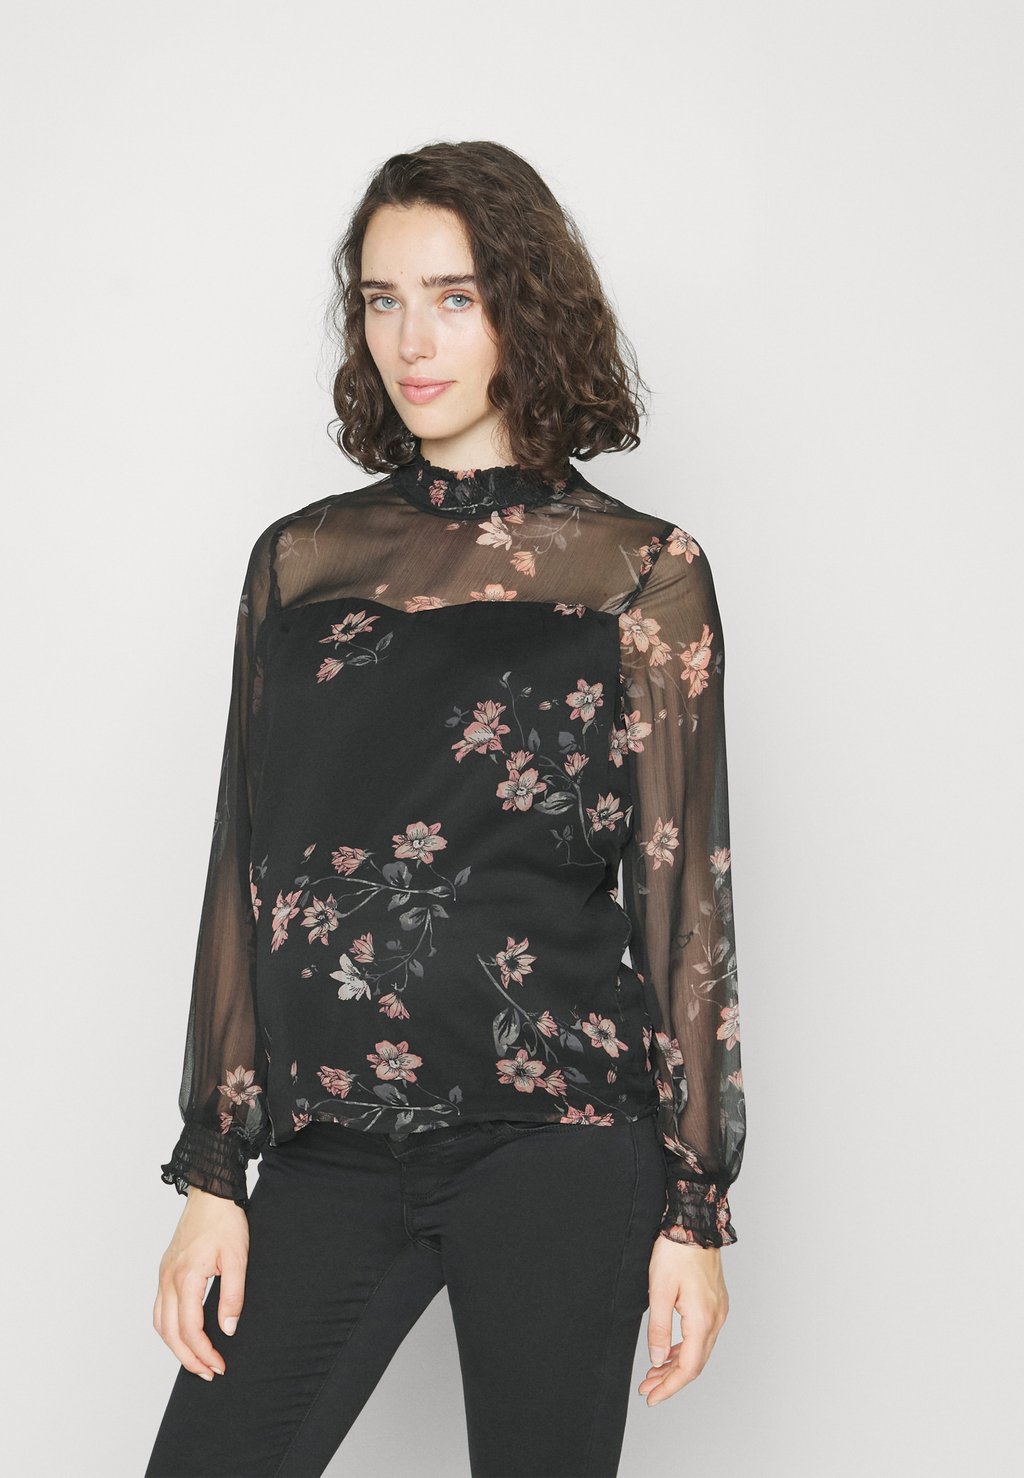 Блузка Vero Moda с цветочным принтом, черный/мультиколор атласная блузка с высоким воротником vero moda синего цвета с цветочным принтом